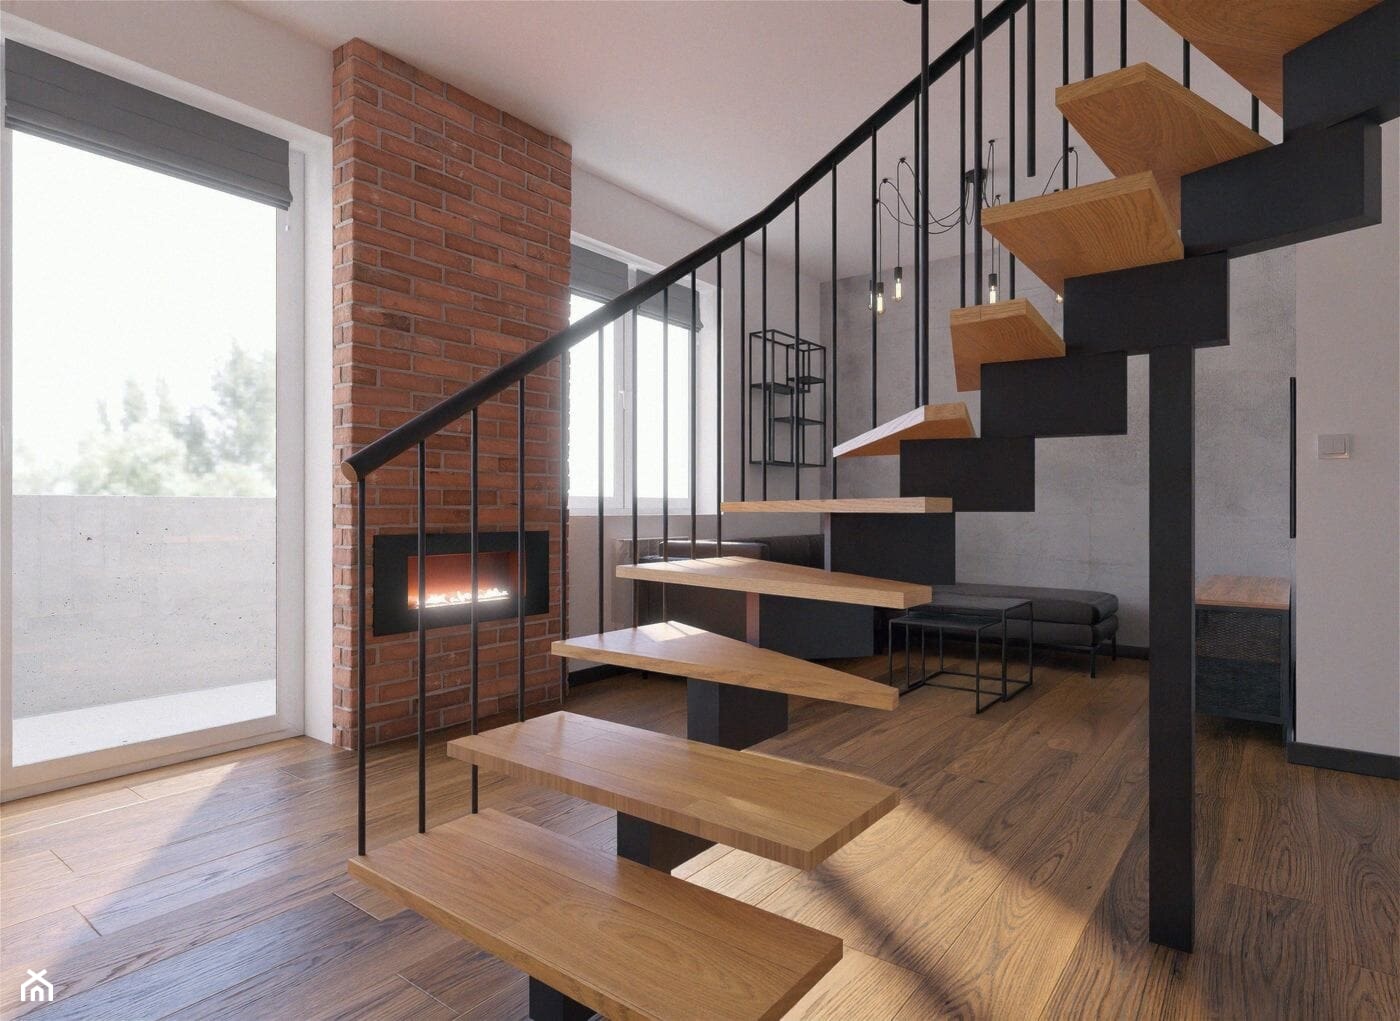 Salon z kominkiem - cegła i industrialne schody - zdjęcie od Holi Home - Homebook